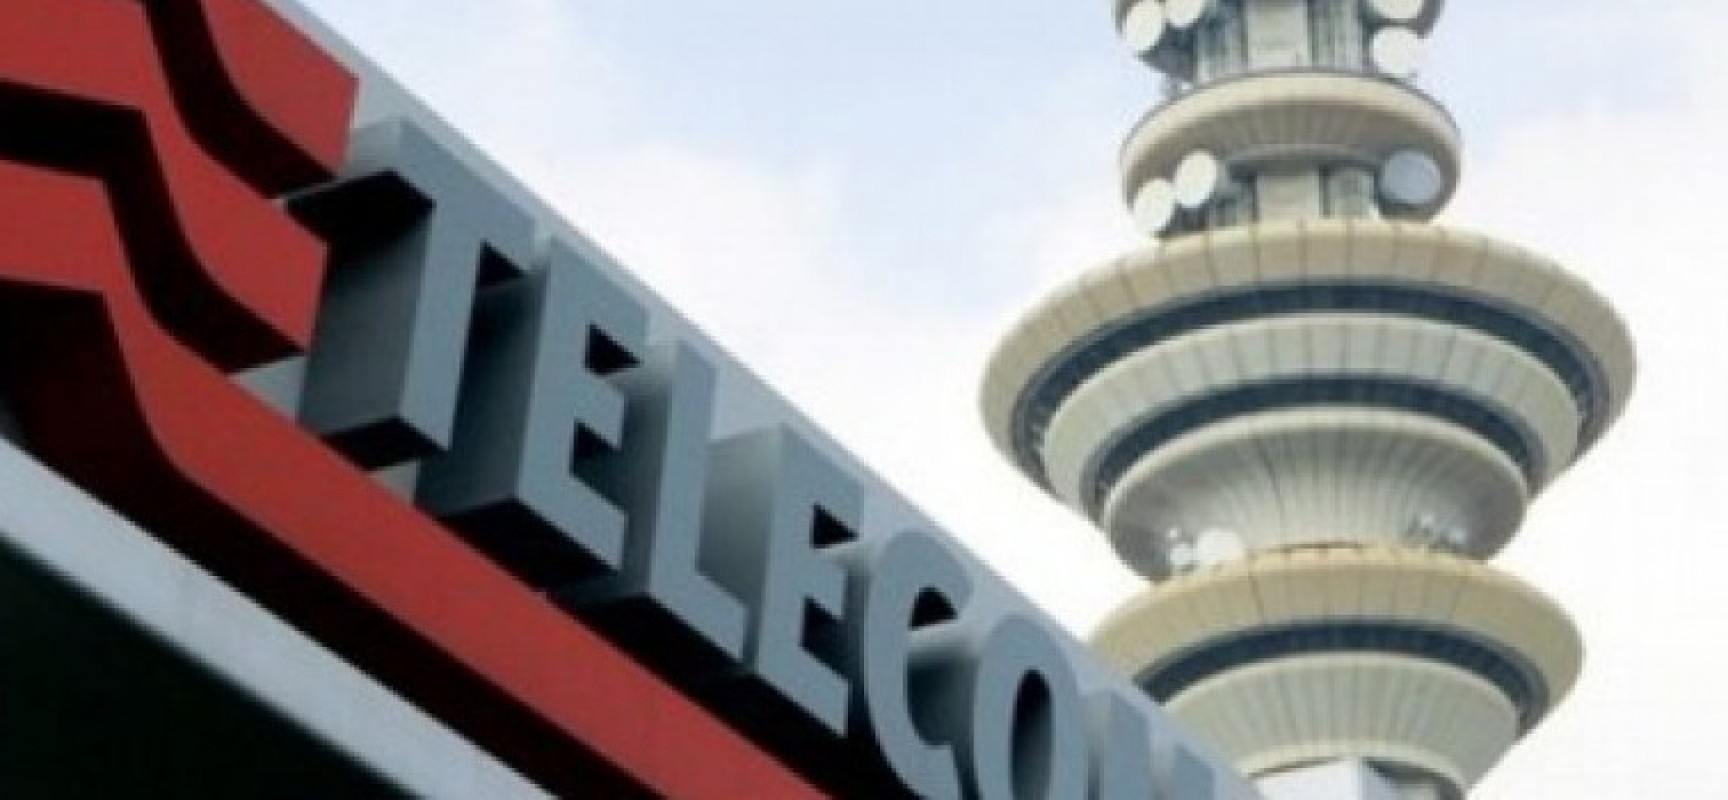 Internet a banda ultra larga, anche Bisceglie avrà la fibra ottica entro giugno 2016